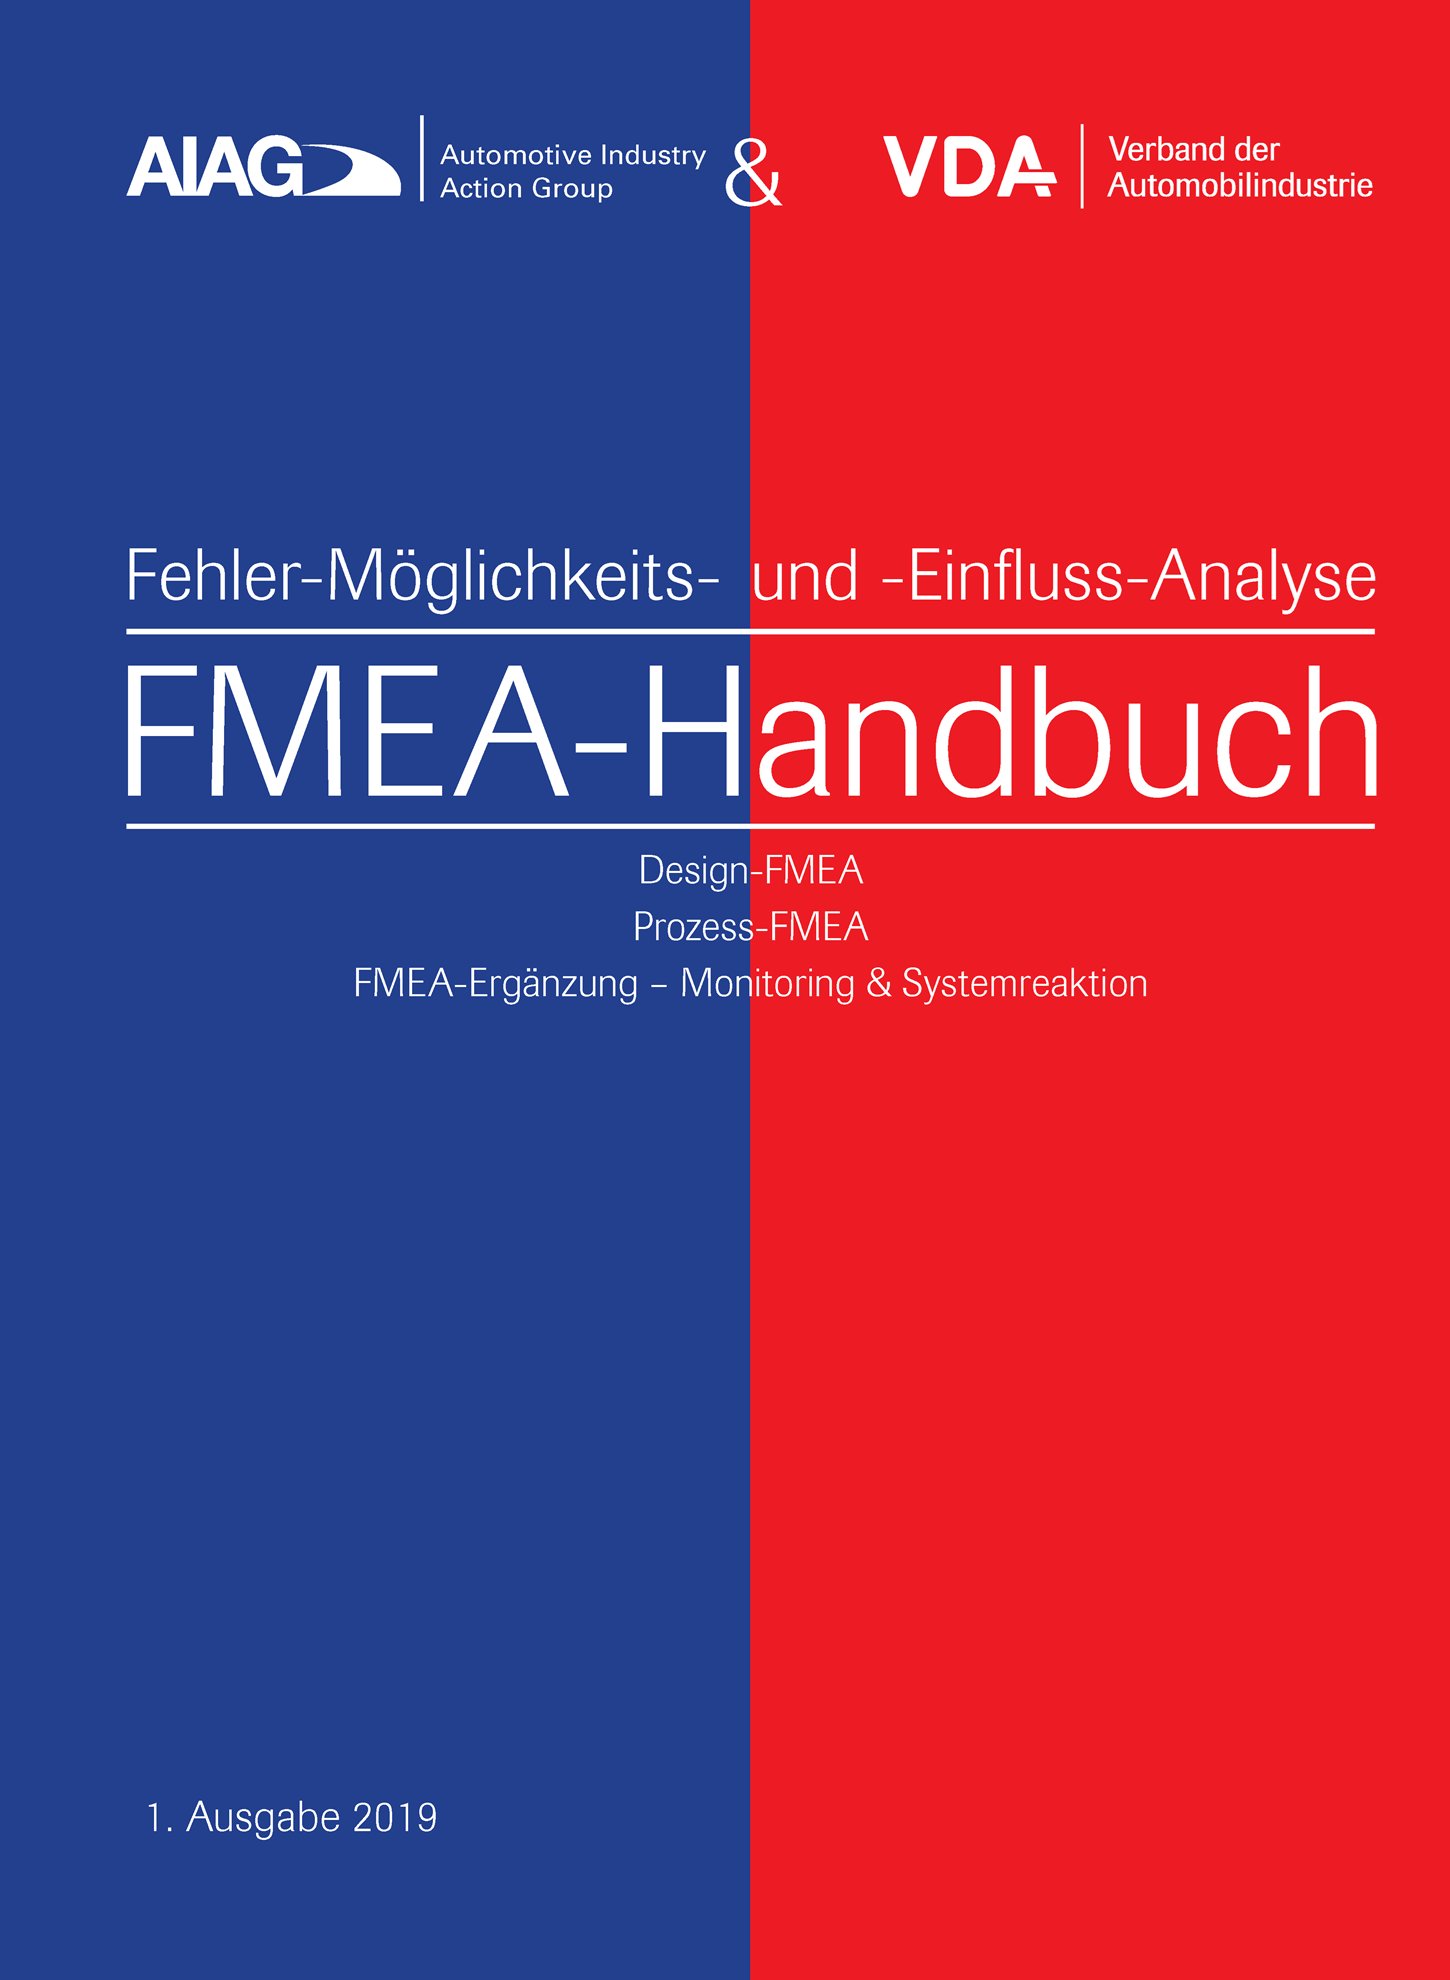 Publikace  VDA AIAG & VDA FMEA-Handbuch
 Design-FMEA, Prozess-FMEA, 
 FMEA-Ergänzung - Monitoring & Systemreaktion
 1. Ausgabe 2019 1.1.2019 náhled